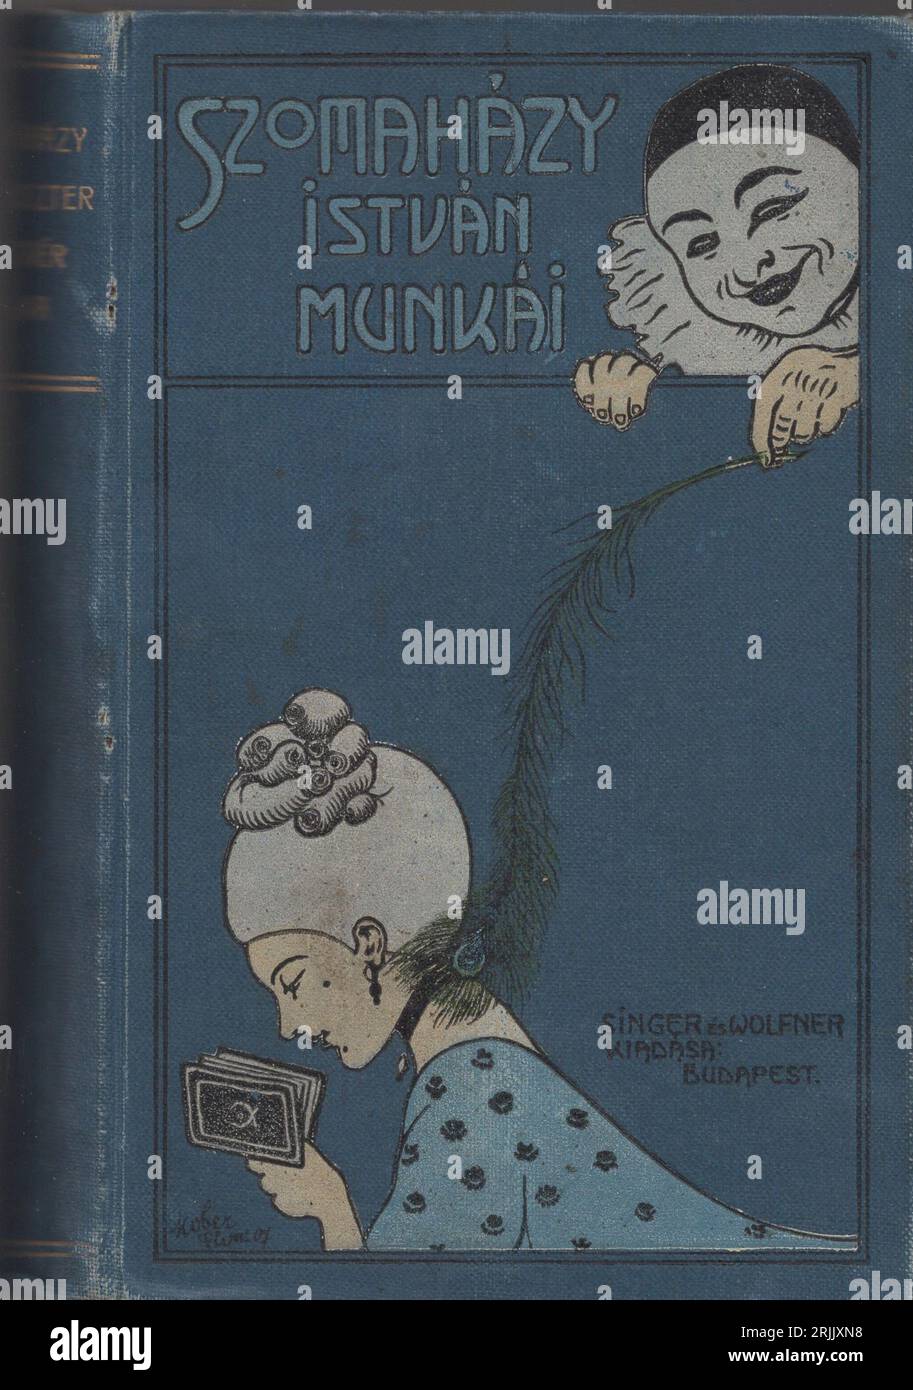 Bella illustrazione di copertina del libro art nouveau di Singer e Wolfner Budapest, Szomaházy István munkái. Harlequien suona con una bambola contadina per una giovane donna che legge: Il clown Pierrot solletica il collo della donna che legge con una piuma di pavone Foto Stock